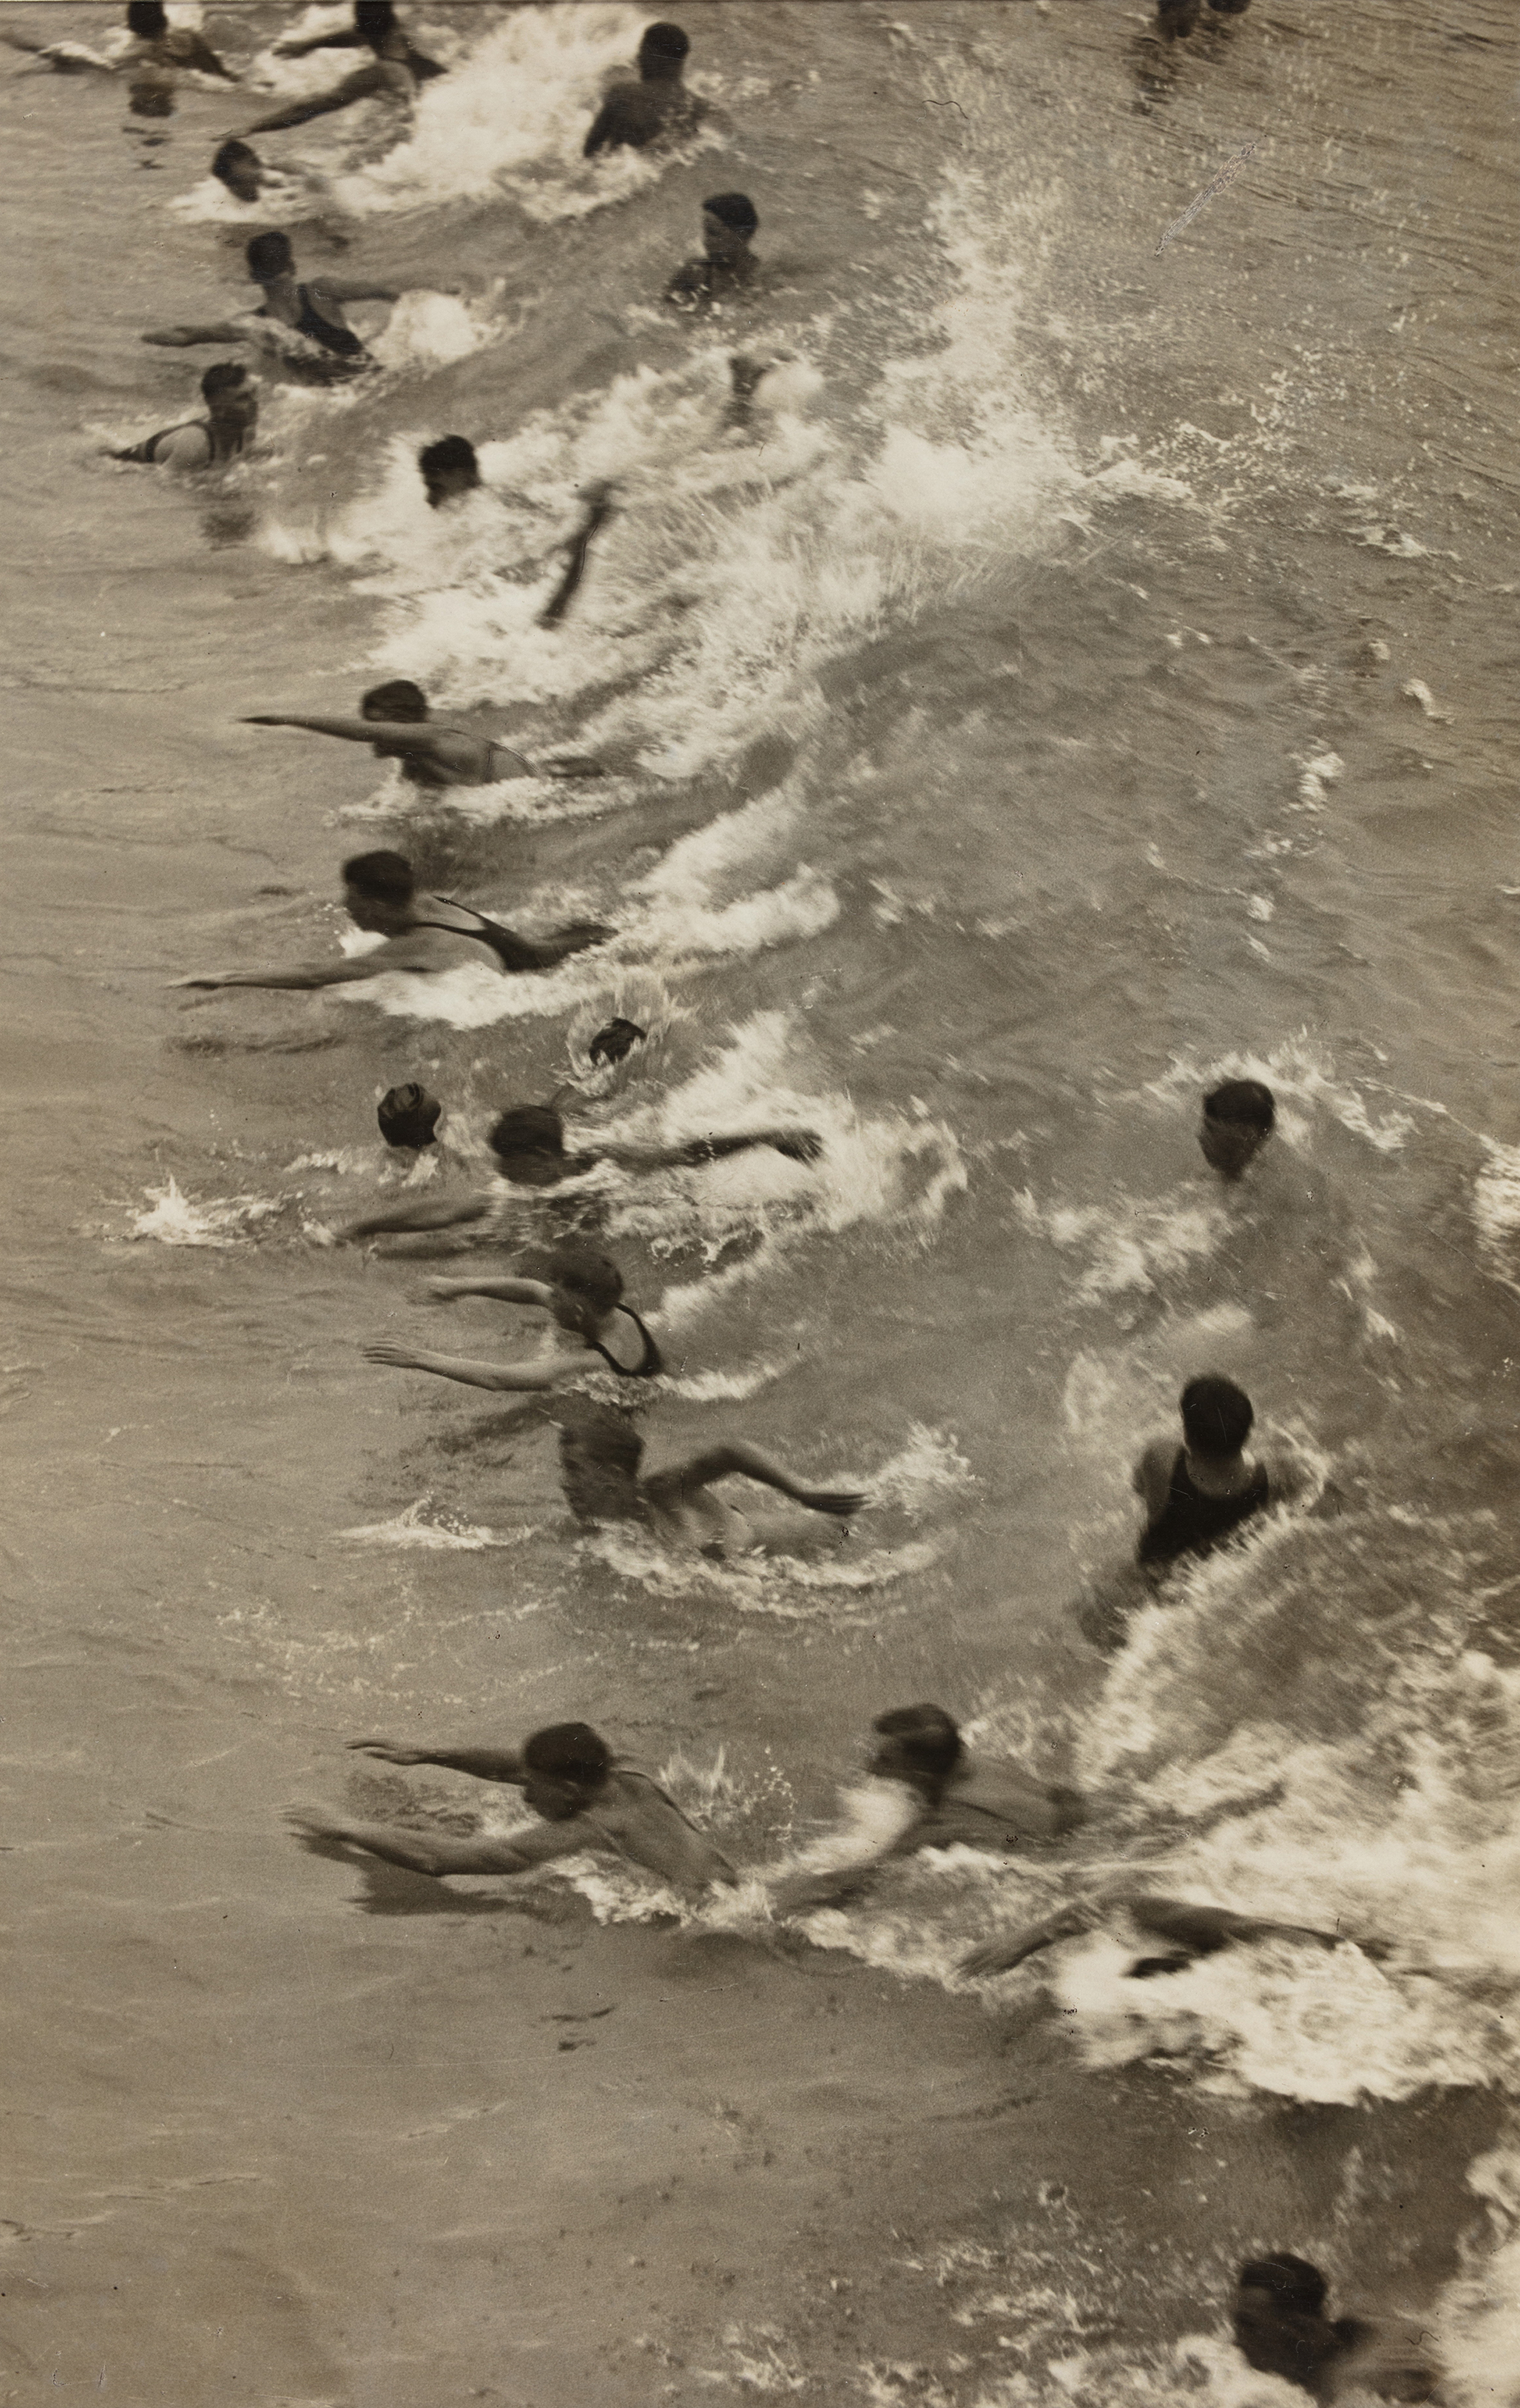 People bodysurfing at Bondi beach.